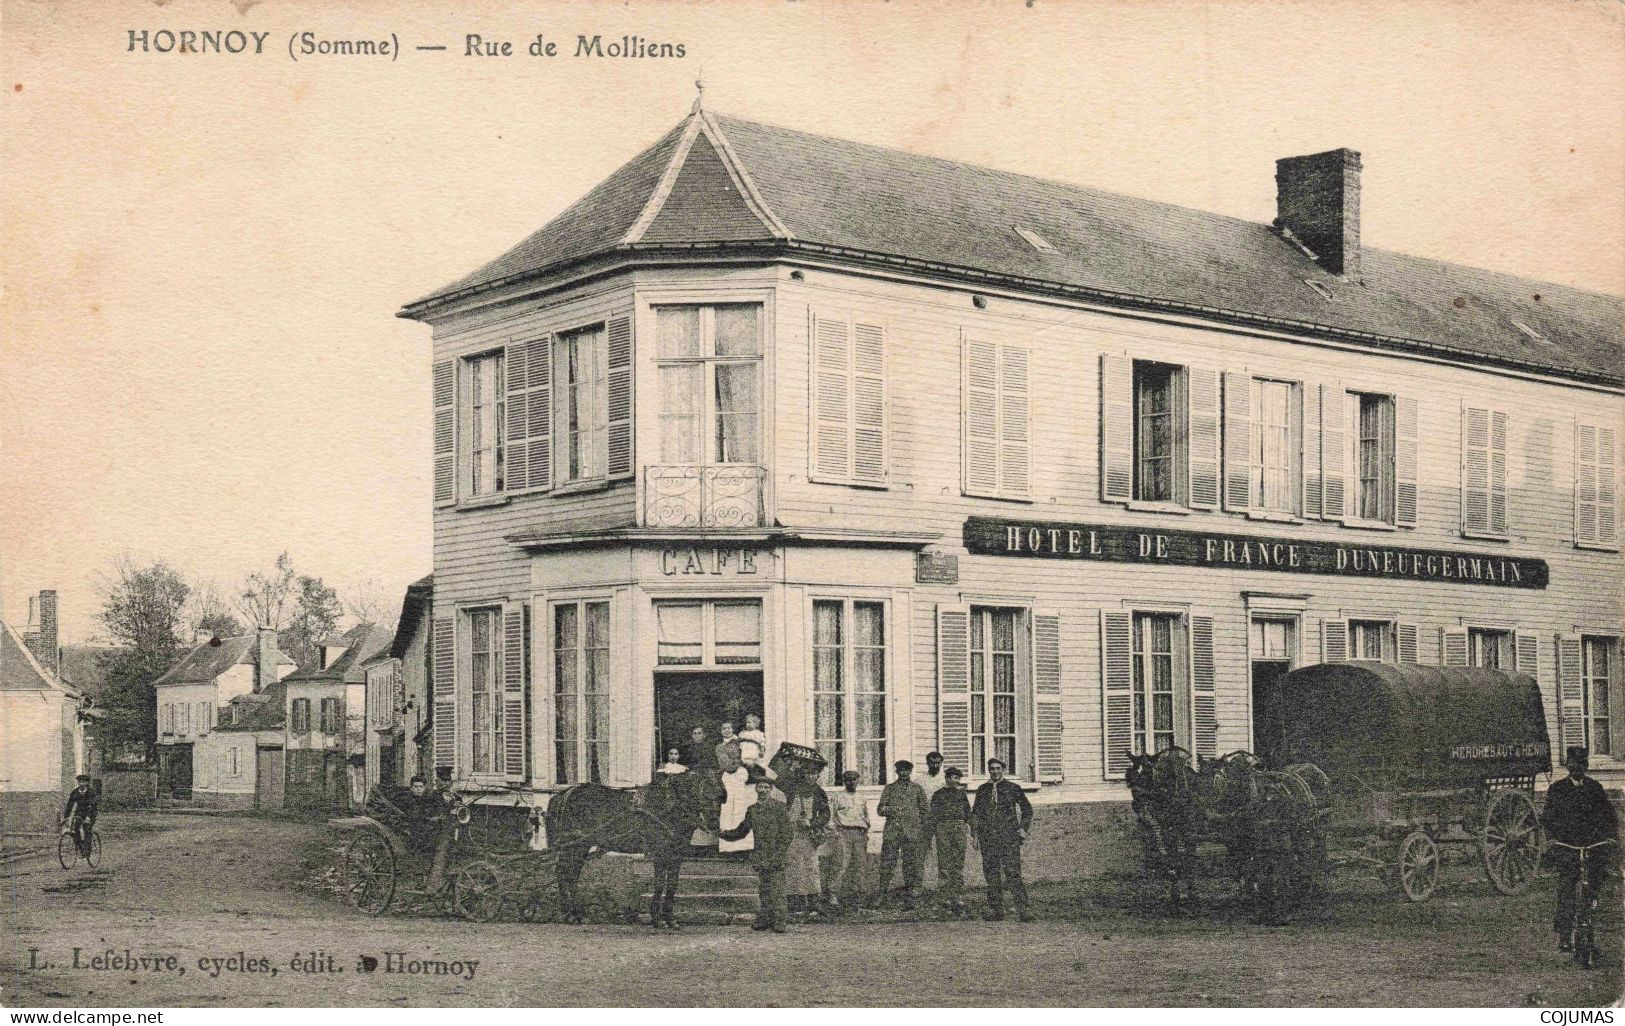 80 - HORNOY _S24015_ Rue De Molliens - Hôtel De France Duneufgermain Café - Hornoy Le Bourg